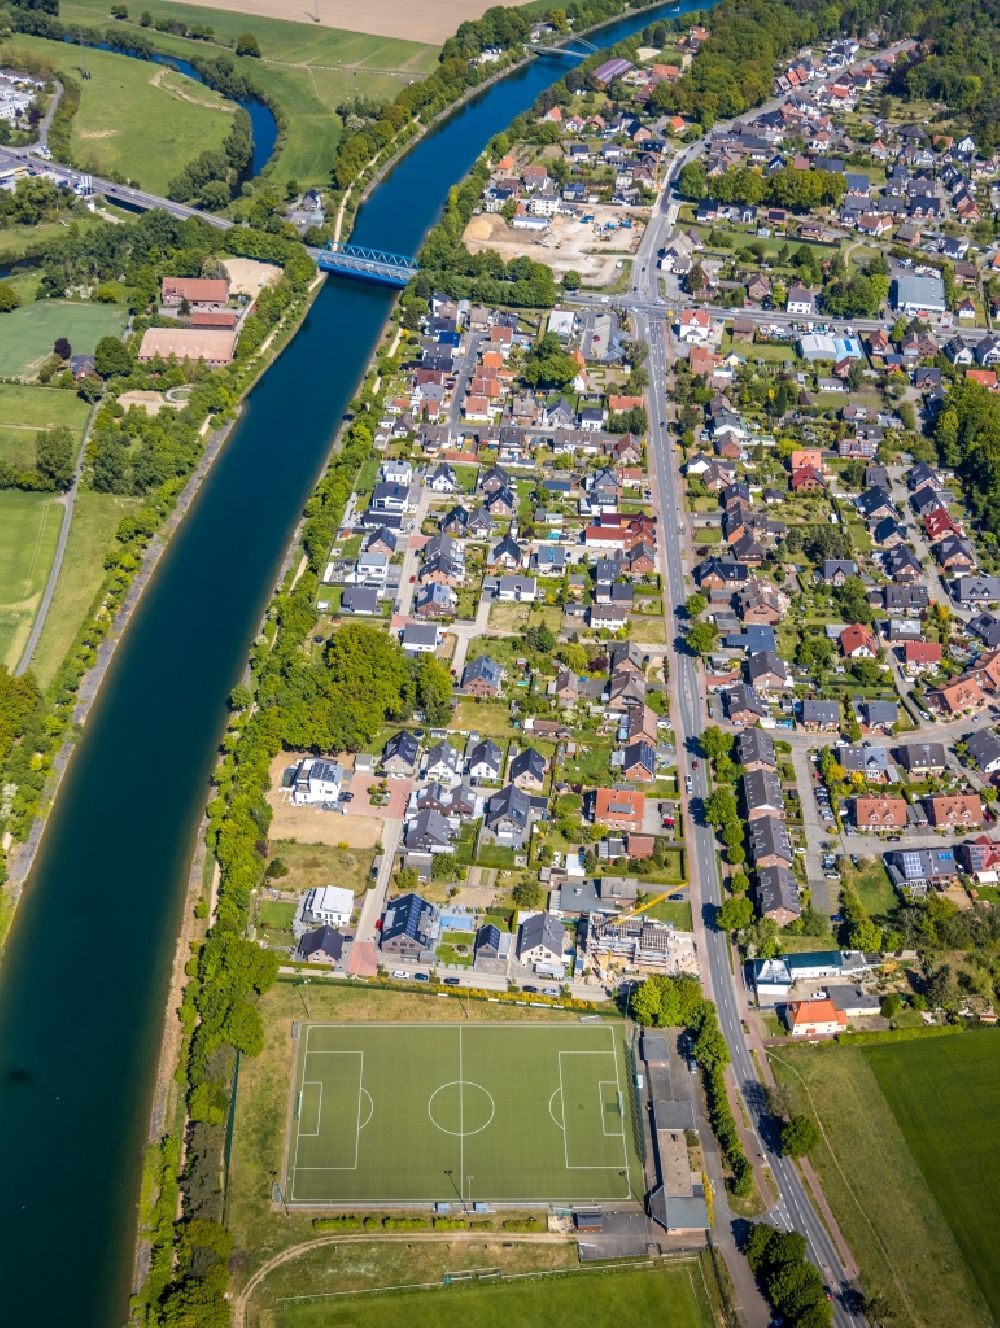 Luftaufnahme Haltern am See - Kanalverlauf des Wesel-Datteln-Kanal und Fluss Lippe in Haltern am See im Bundesland Nordrhein-Westfalen, Deutschland